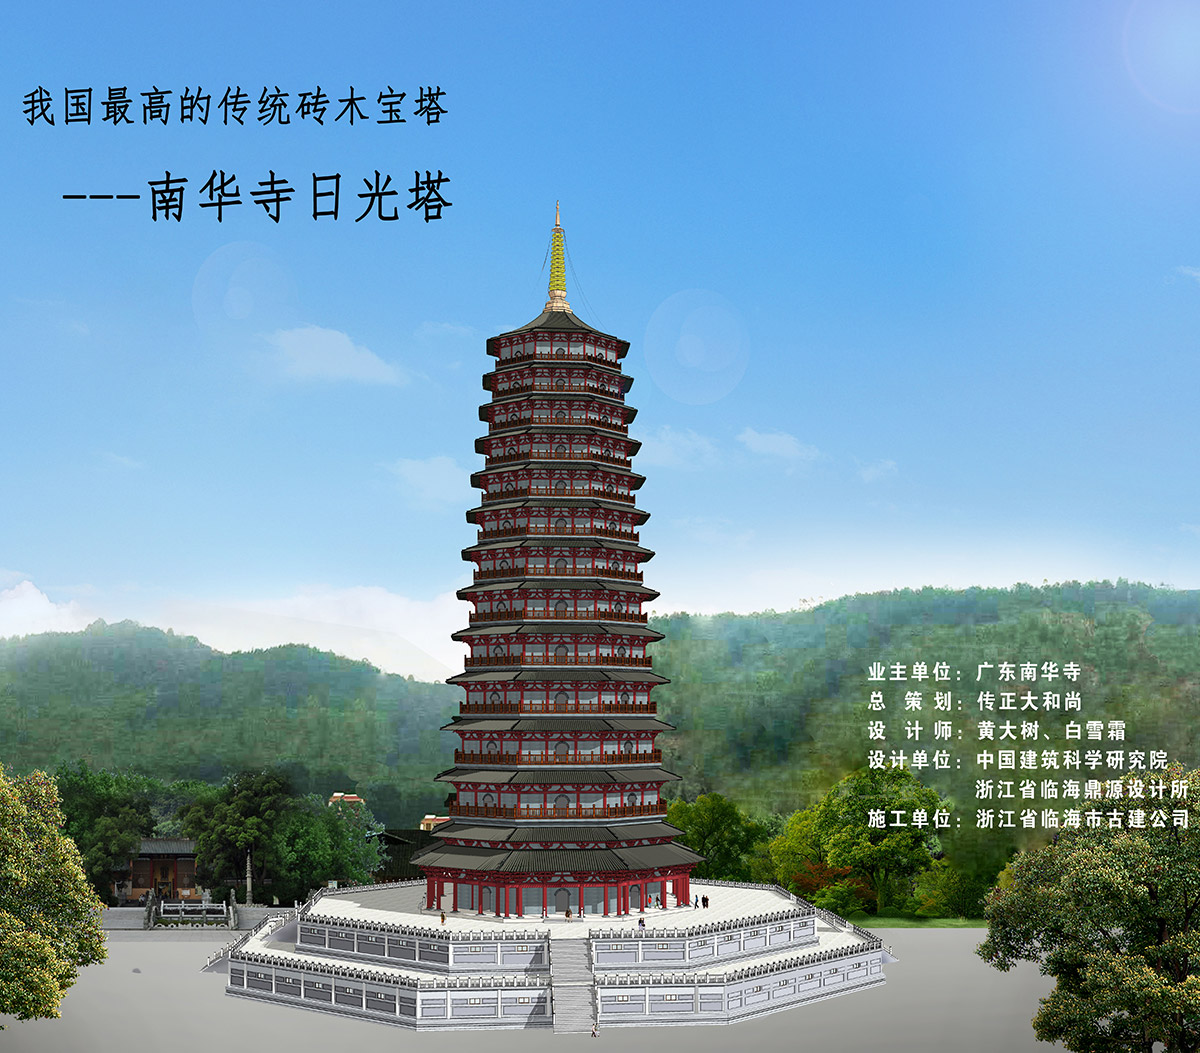 我國最高的傳統磚木寶塔——南華寺日光塔